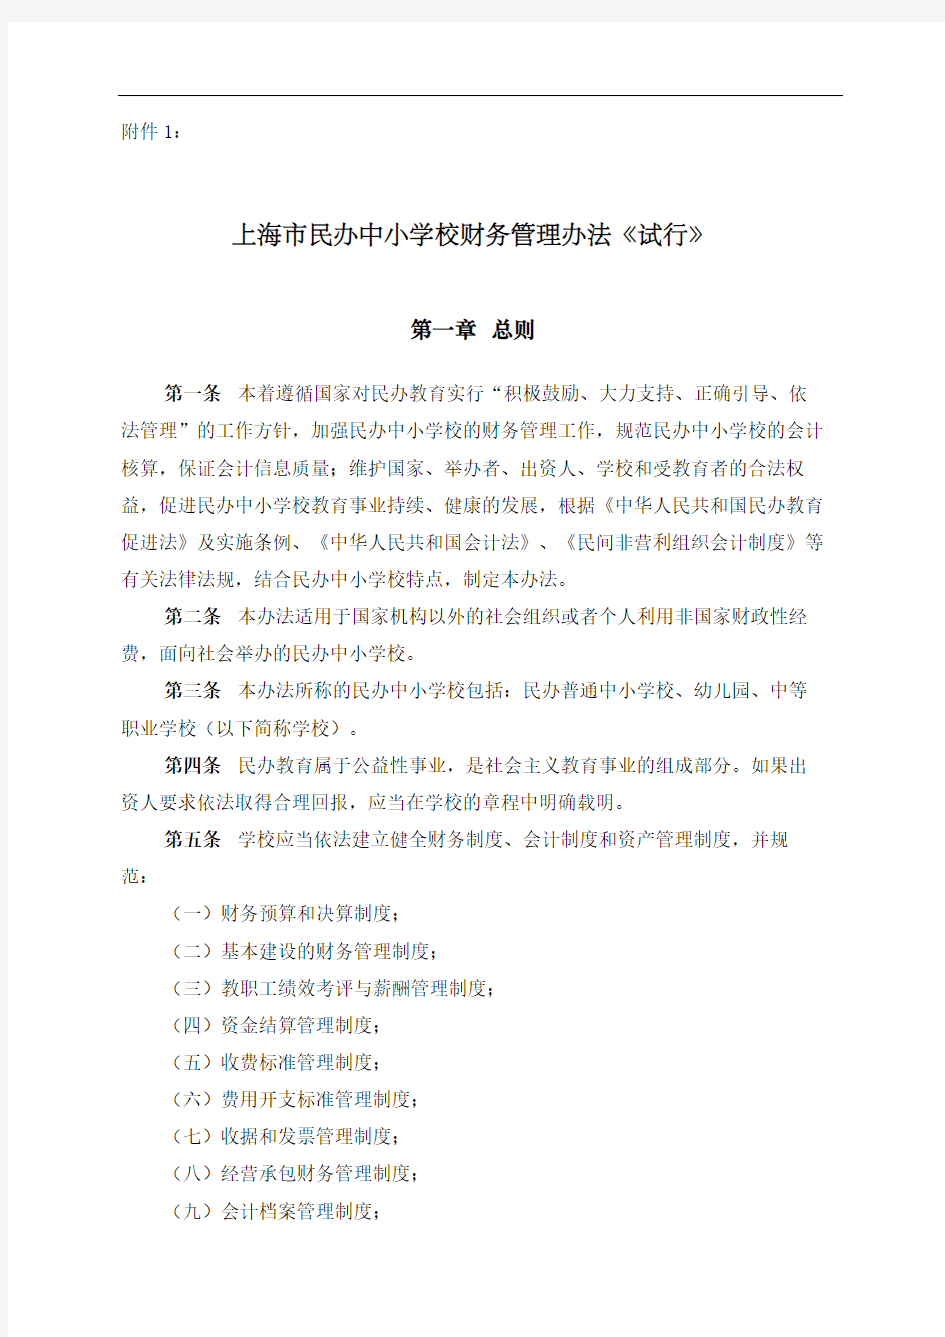 上海民办中小学校财务管理规定试行